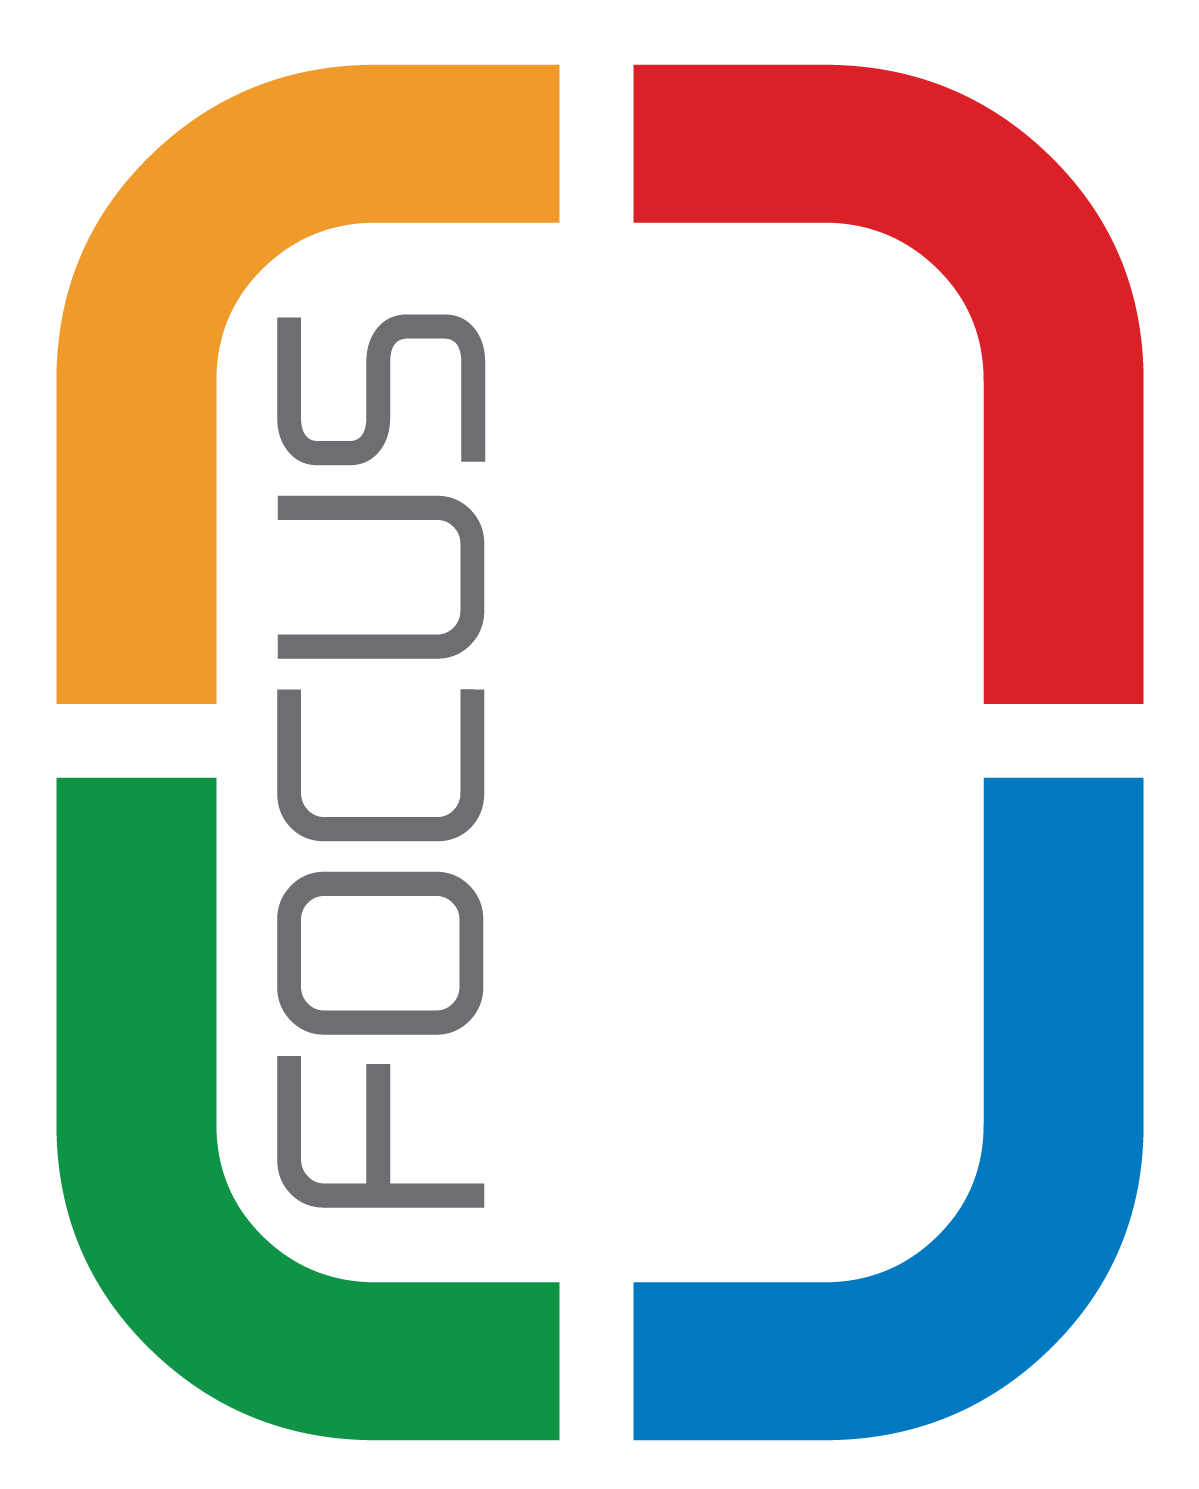 Service focused. Фокус логотип. Focus логотип. Focus logo. Focus game Company logo.